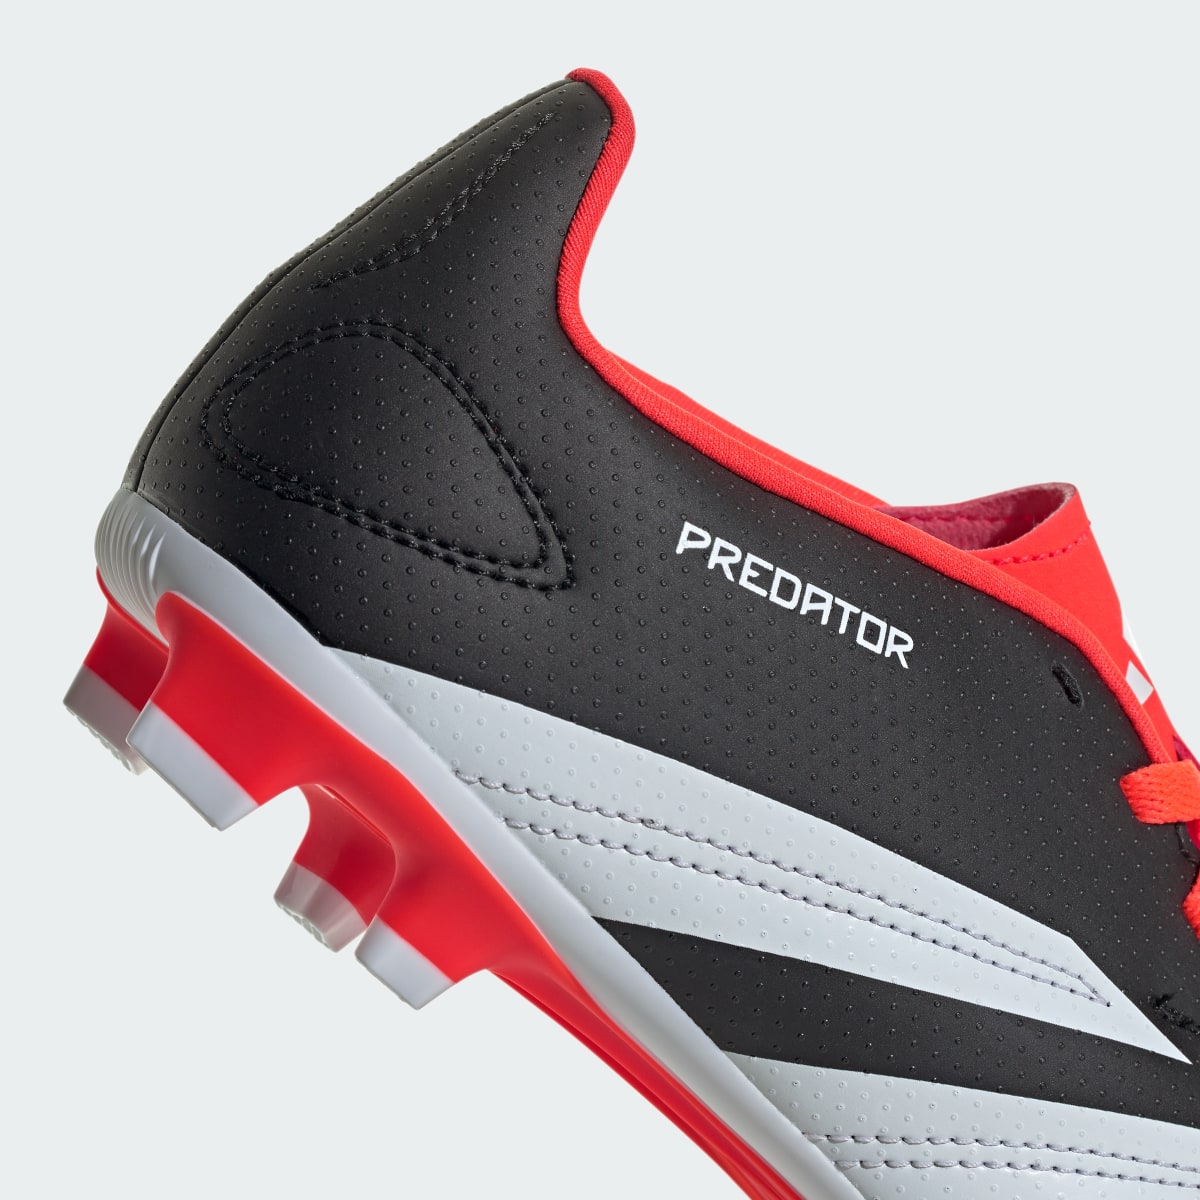 Adidas Calzado de Fútbol Predator Club Multiterreno. 10